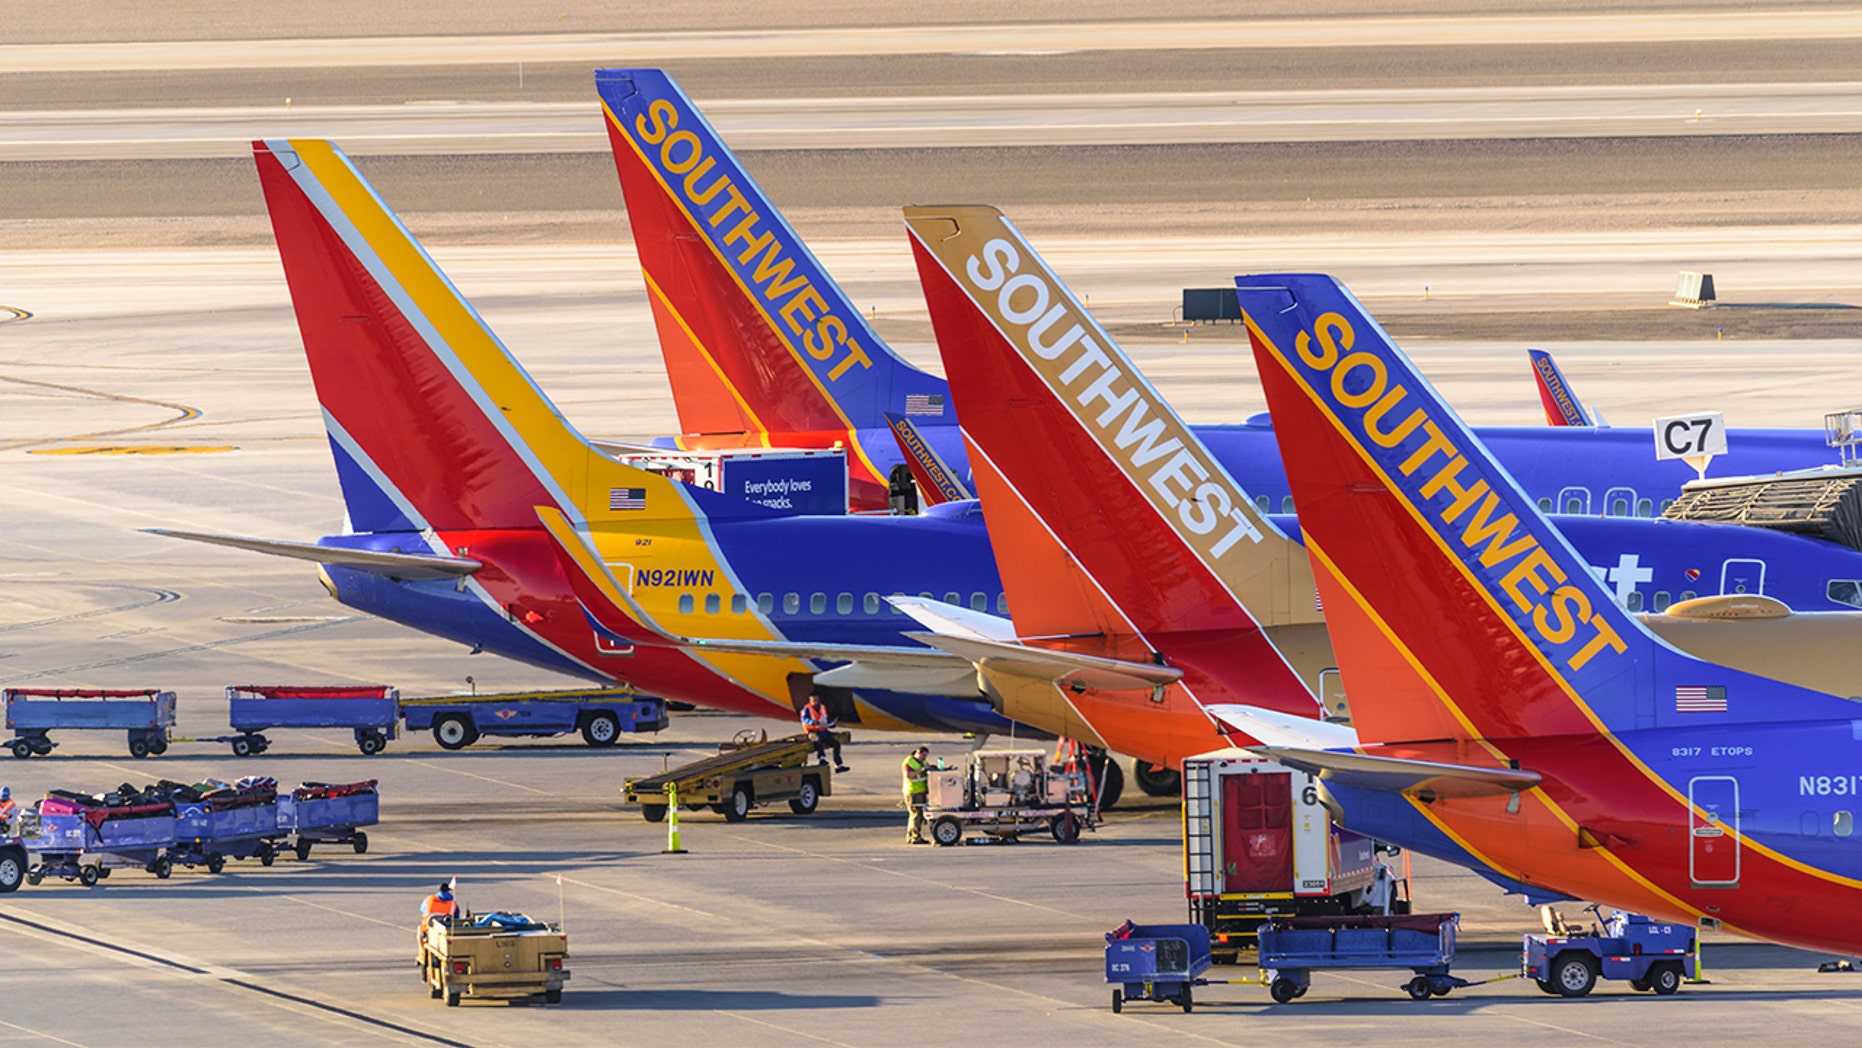 southwest airlines pilot union